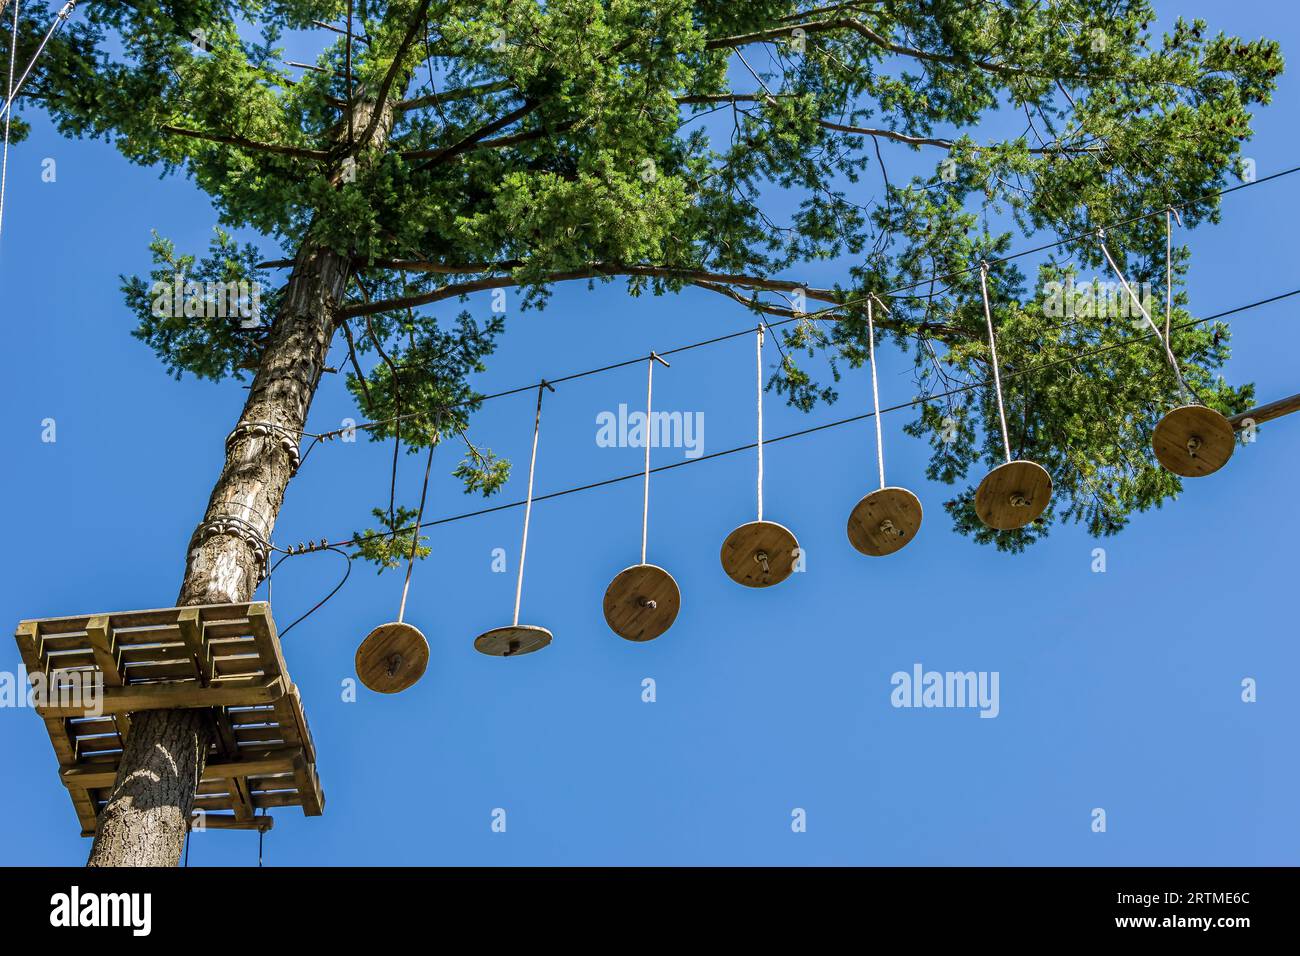 Plate-forme et autres équipements suspendus en l'air sur des arbres dans le parc d'aventure suspendu Pizzorne, Lucca, Italie Banque D'Images